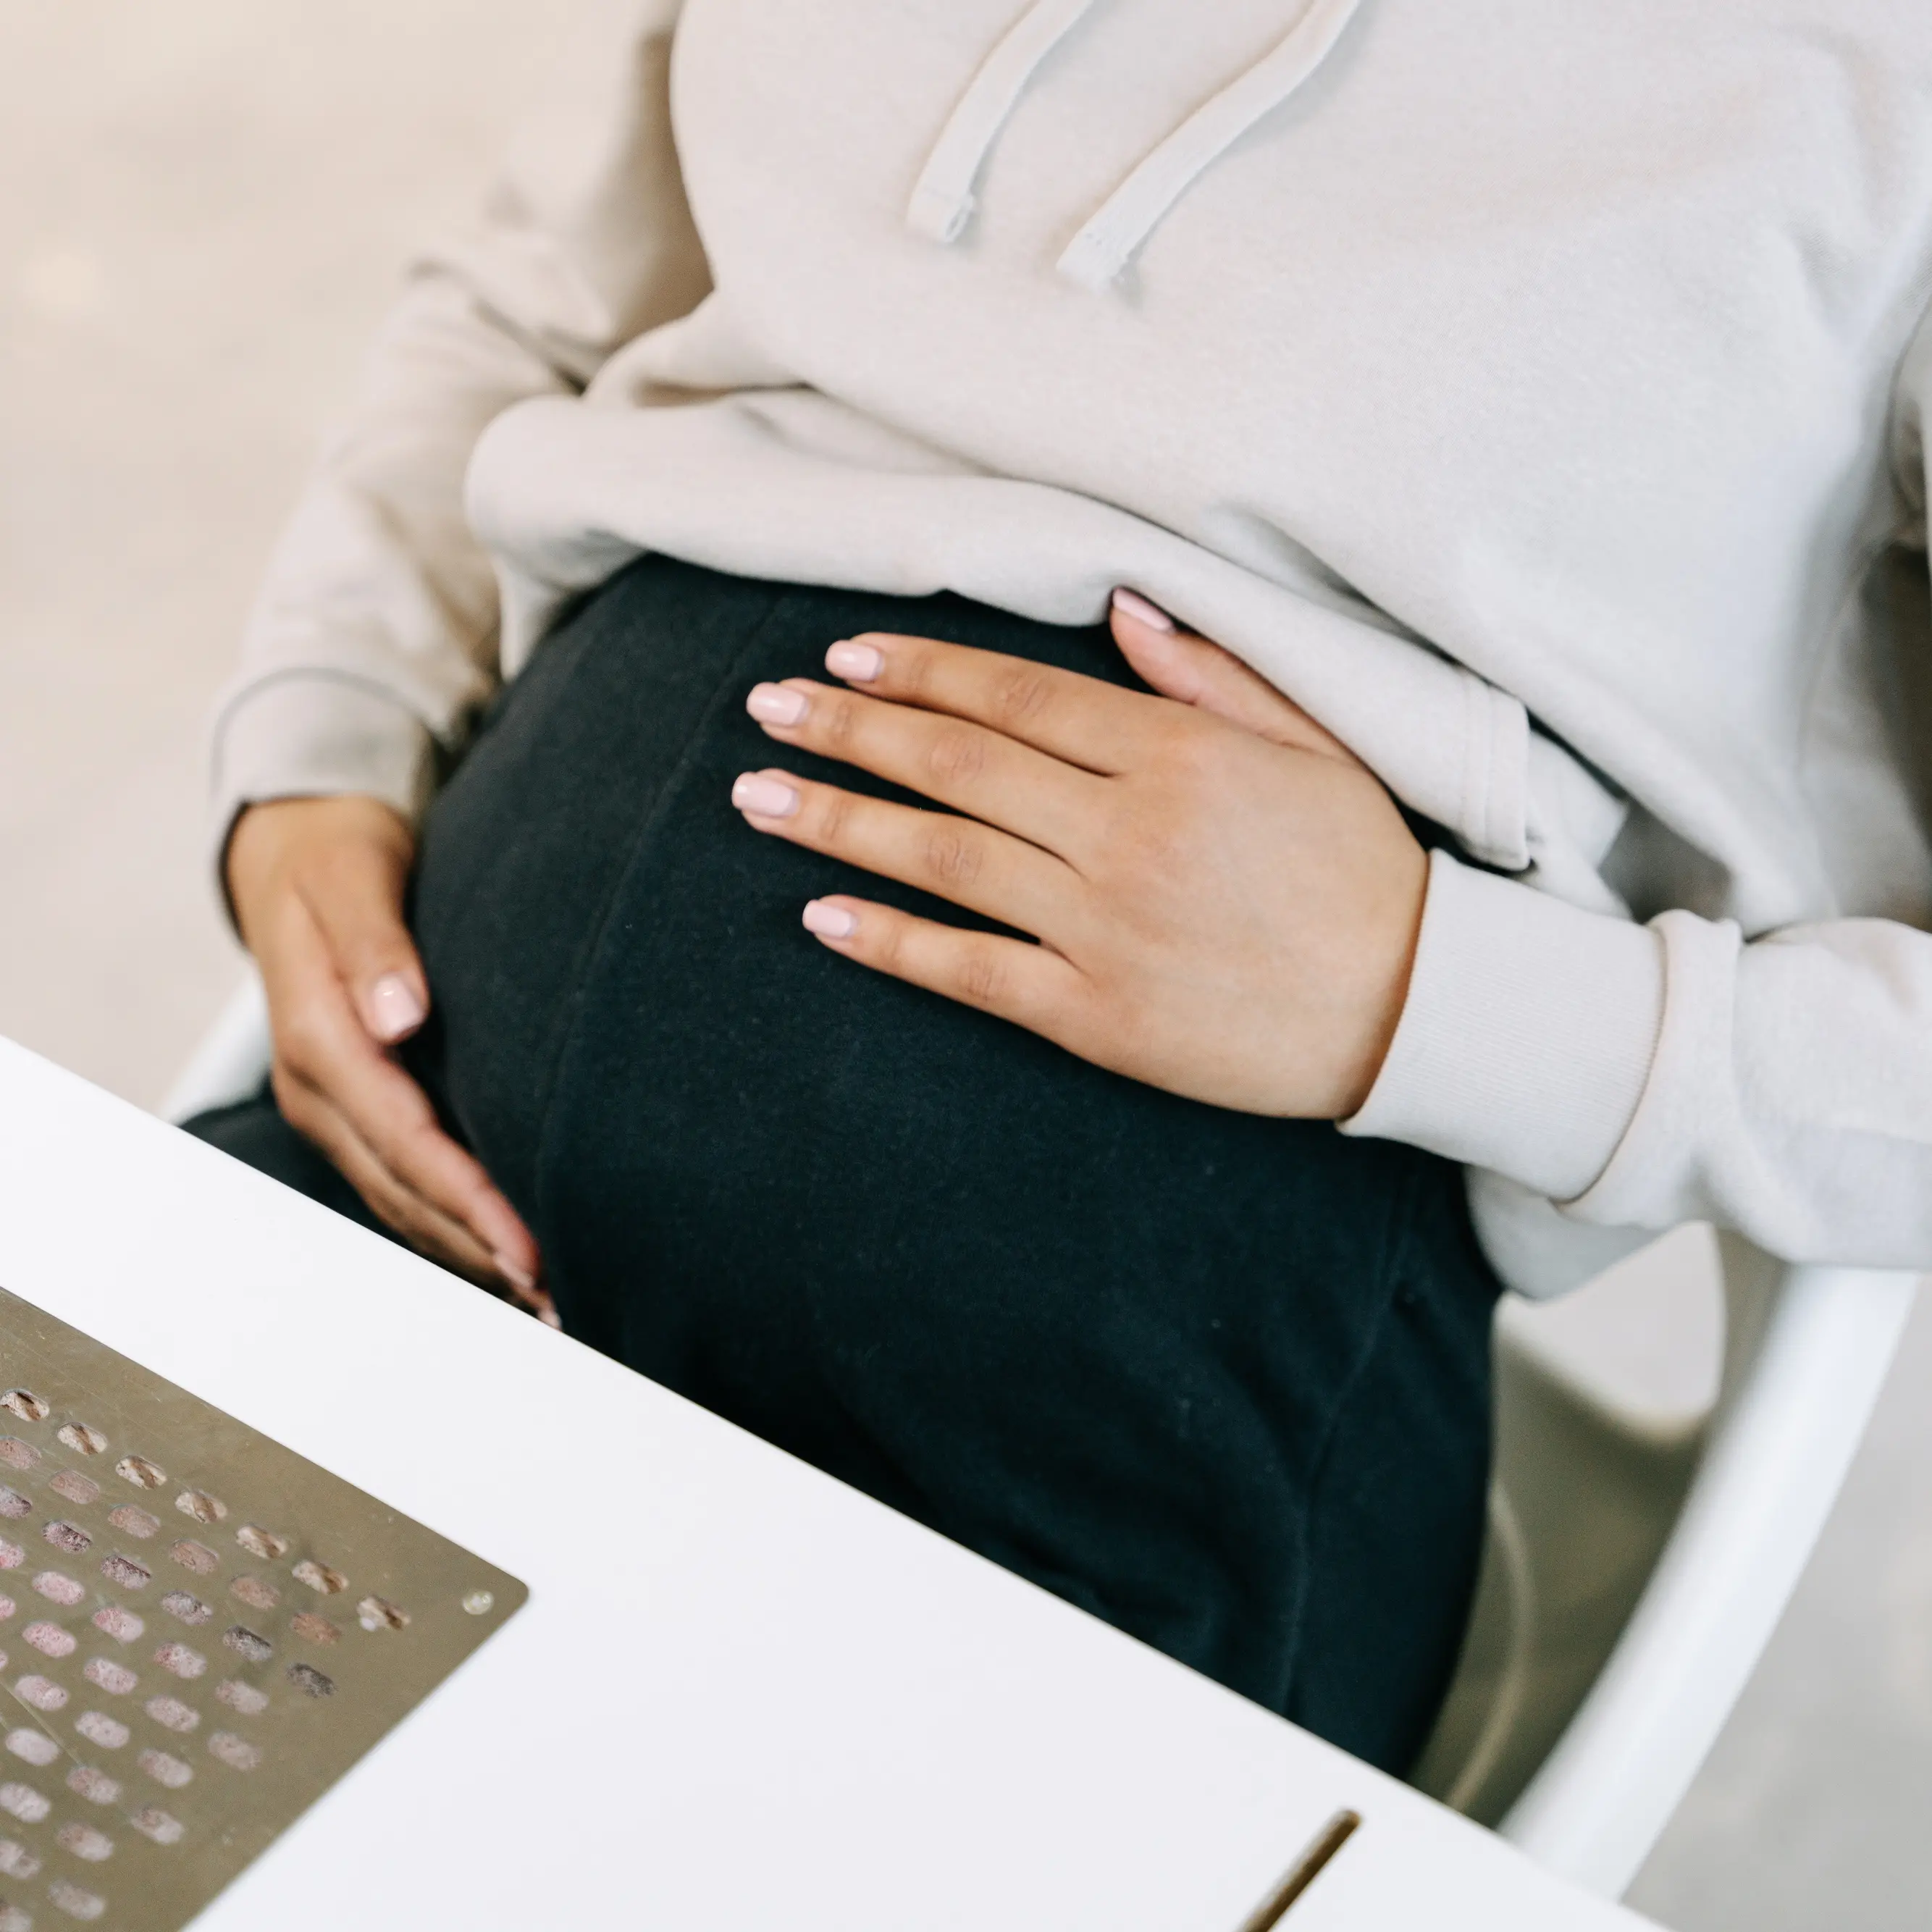 Come richiedere il congedo di maternità obbligatorio